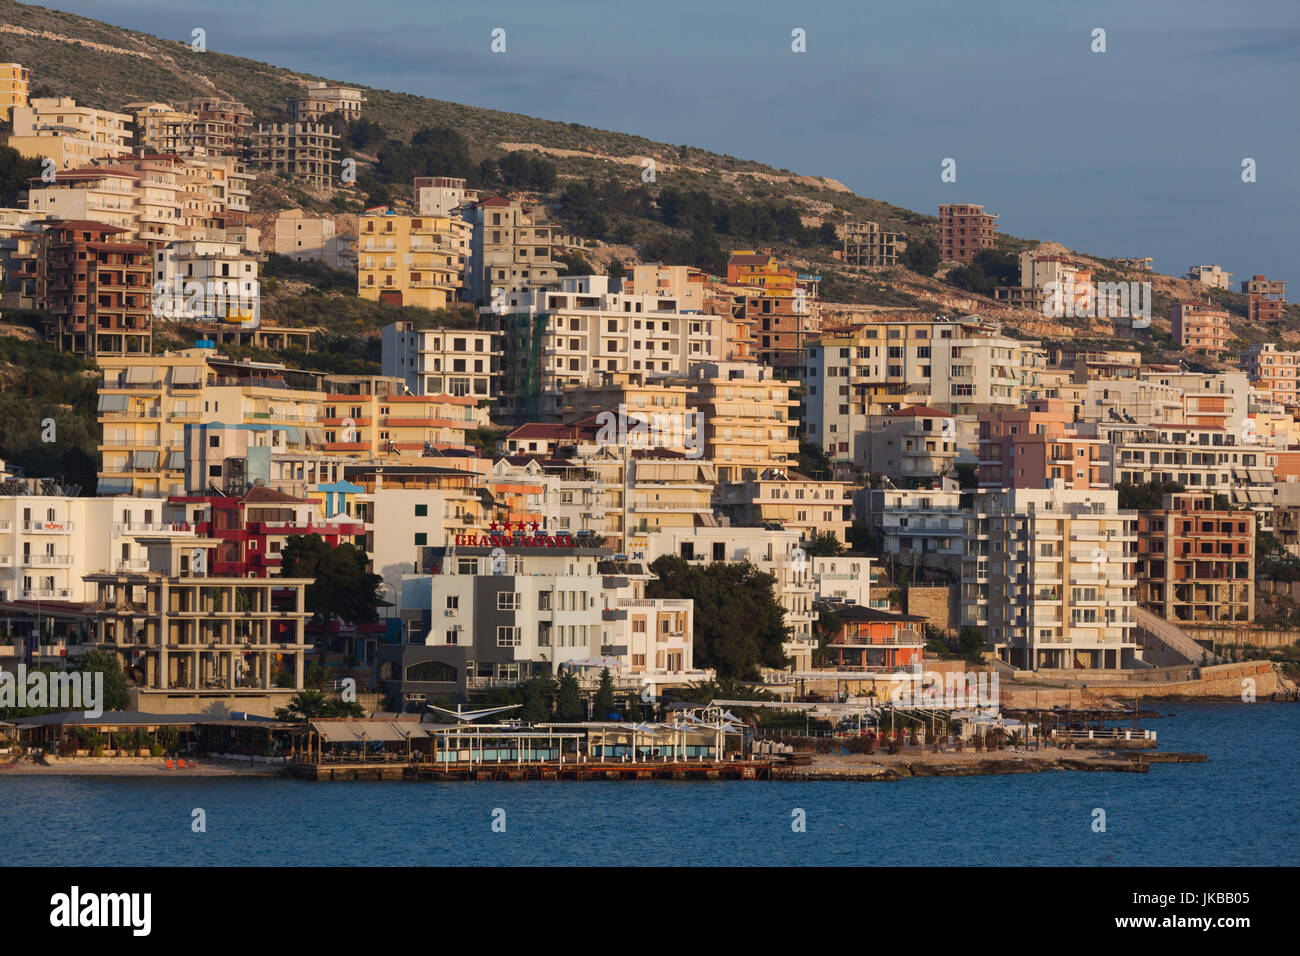 Albania, Albanian Riviera, Saranda, hotels along the Ionian Sea Stock Photo